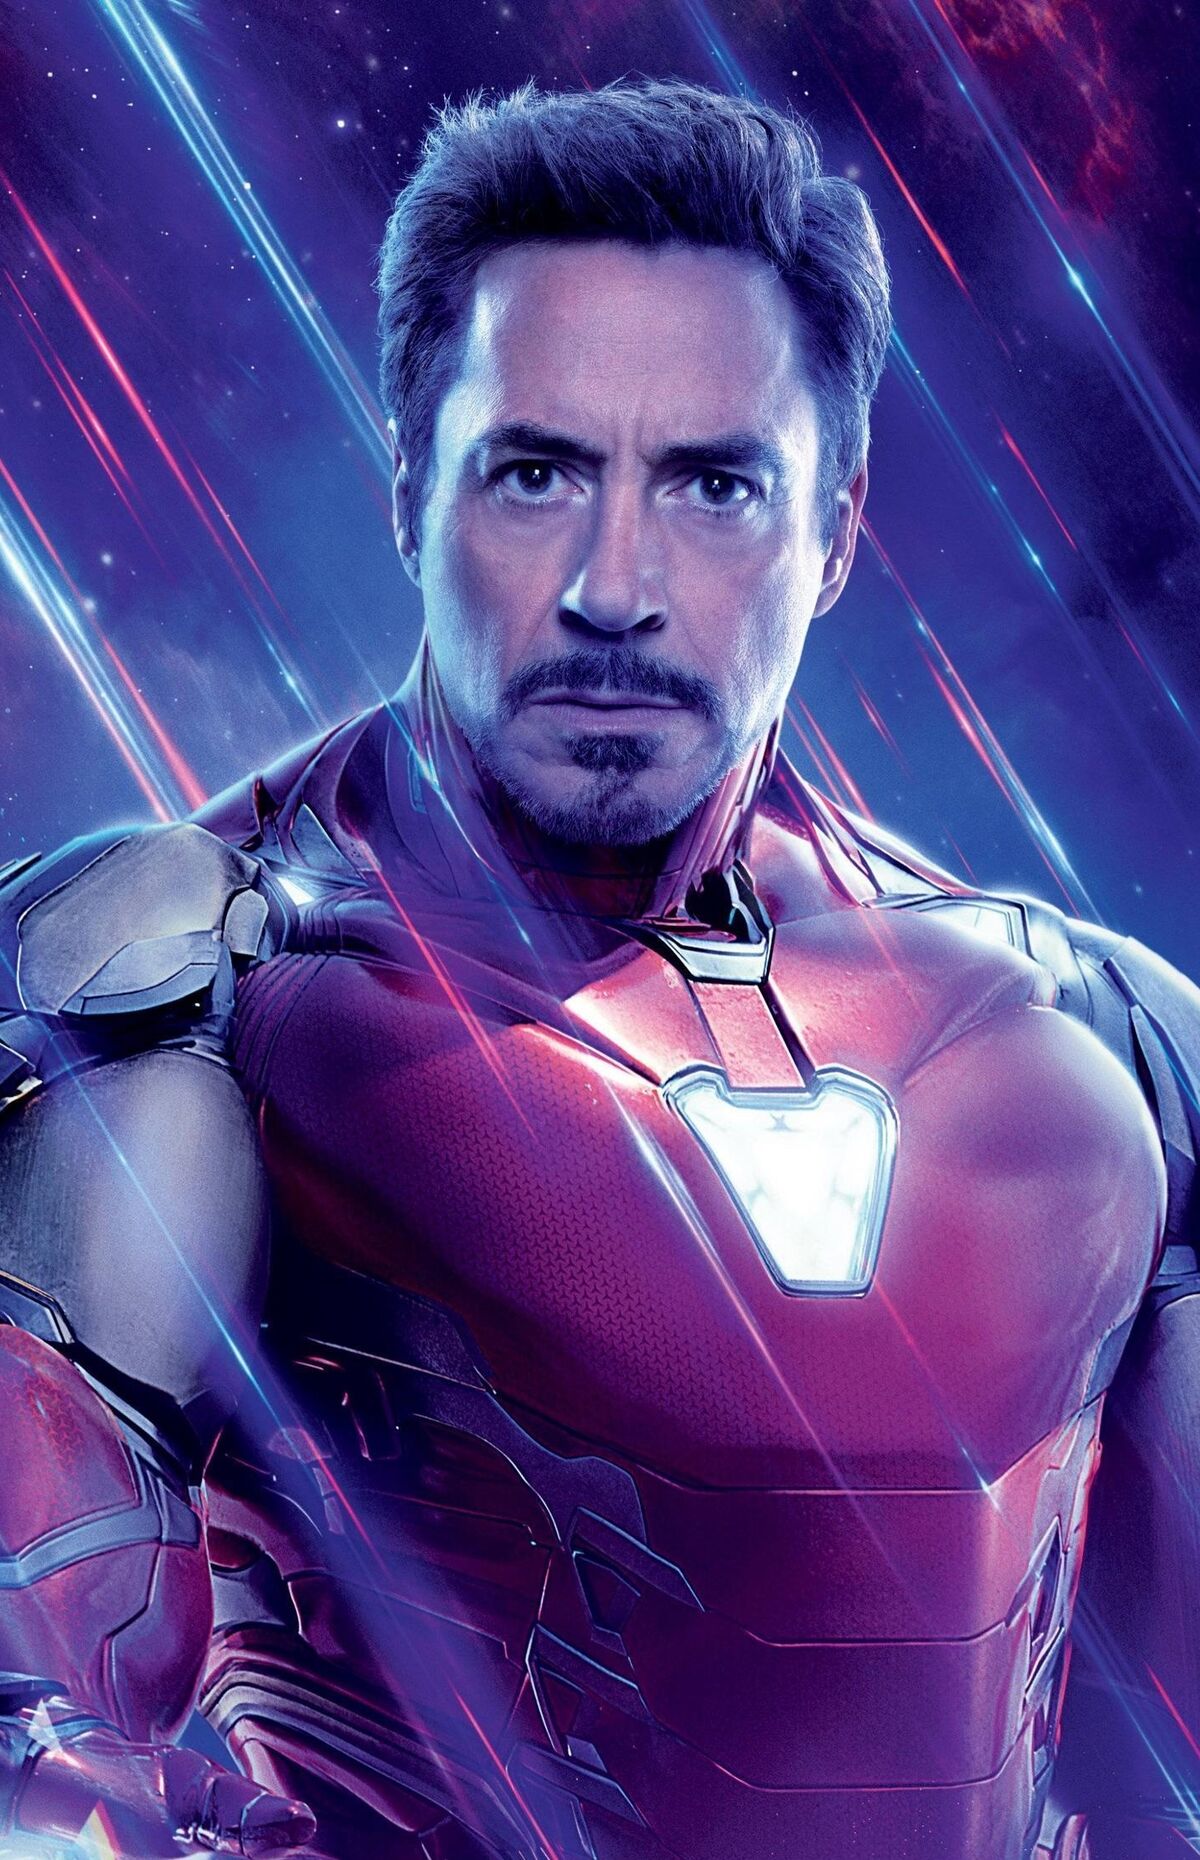 HD wallpaper: The Avengers, Avengers Endgame, Iron Man, Spider-Man |  Wallpaper Flare